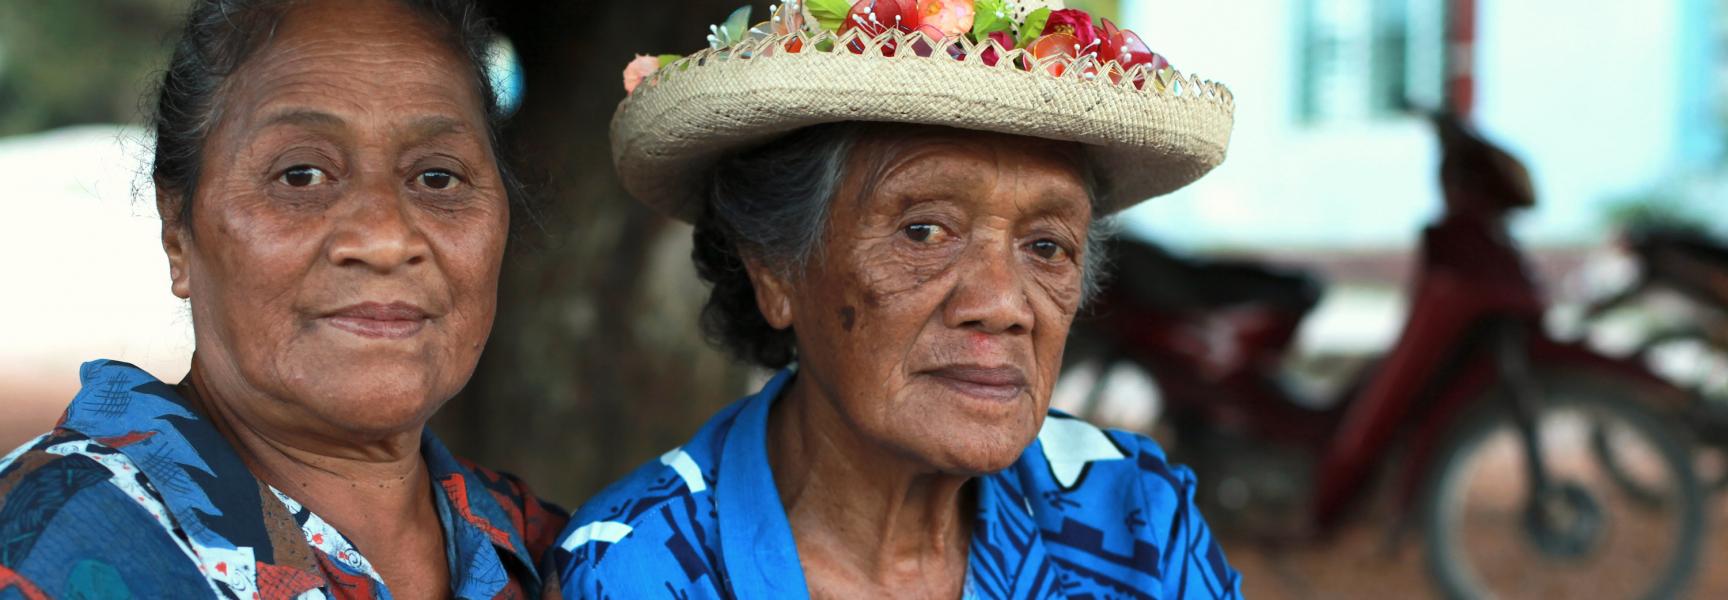 Mujer en las islas Cook